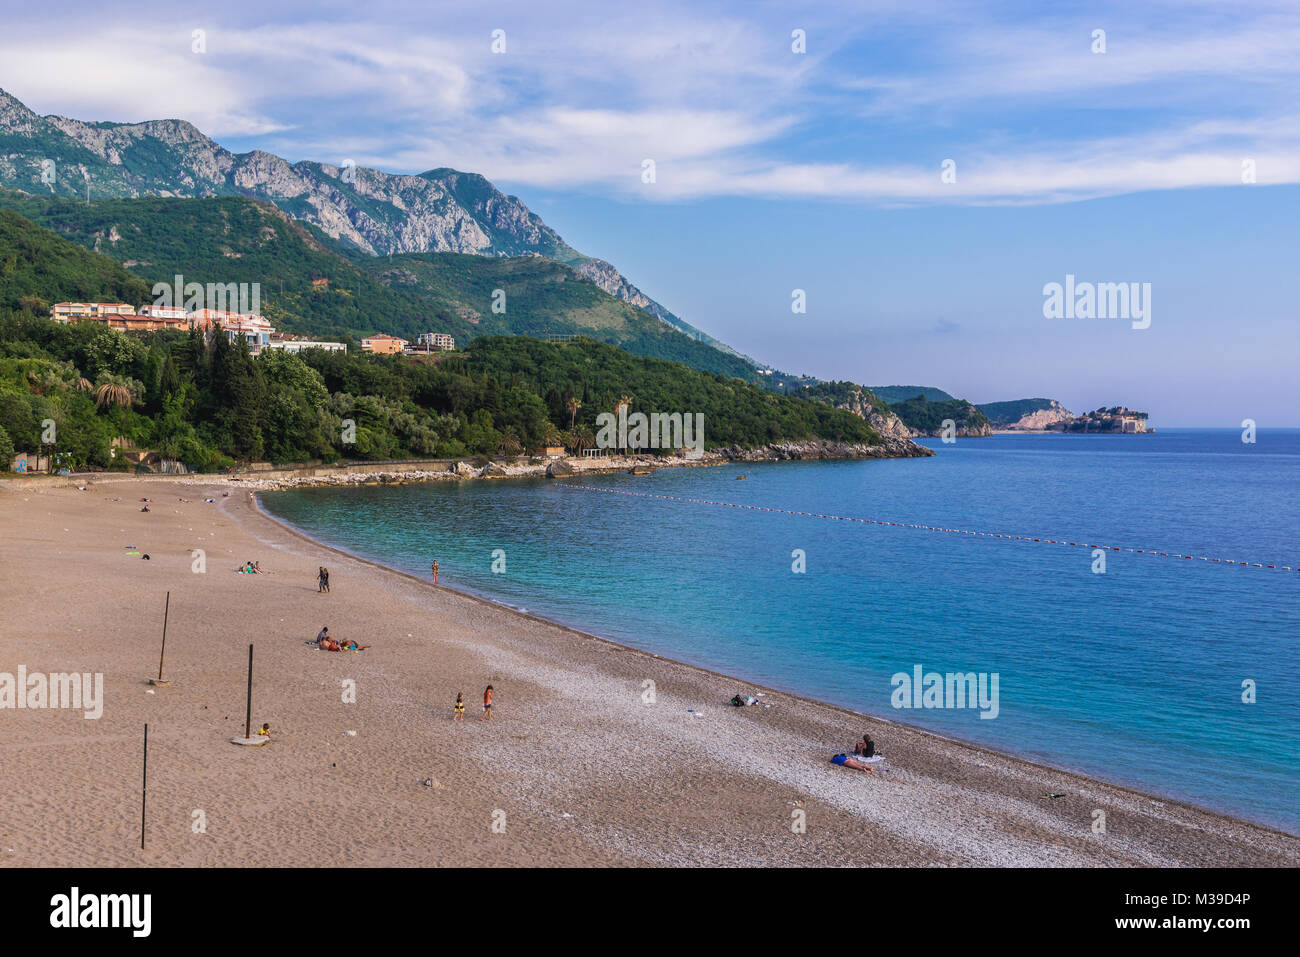 Kamenovo beach in Przno, small resort village on the Adriatic Sea coast near Budva city Montenegro Stock Photo